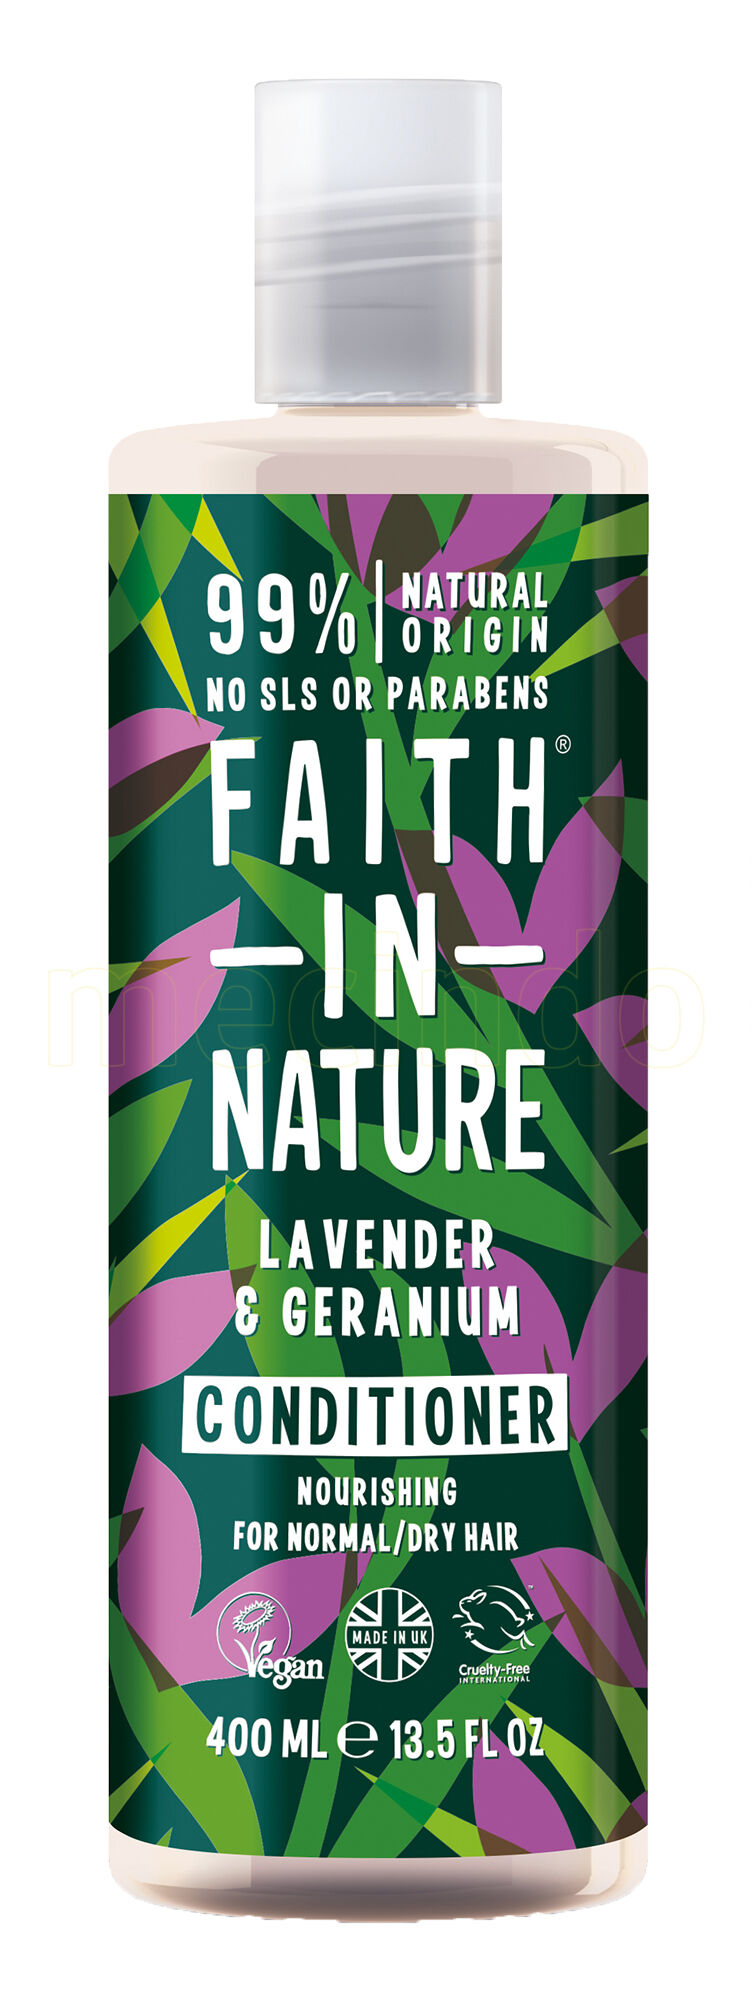 Faith in Nature Balsam Lavendel & Geranium - 400 ml